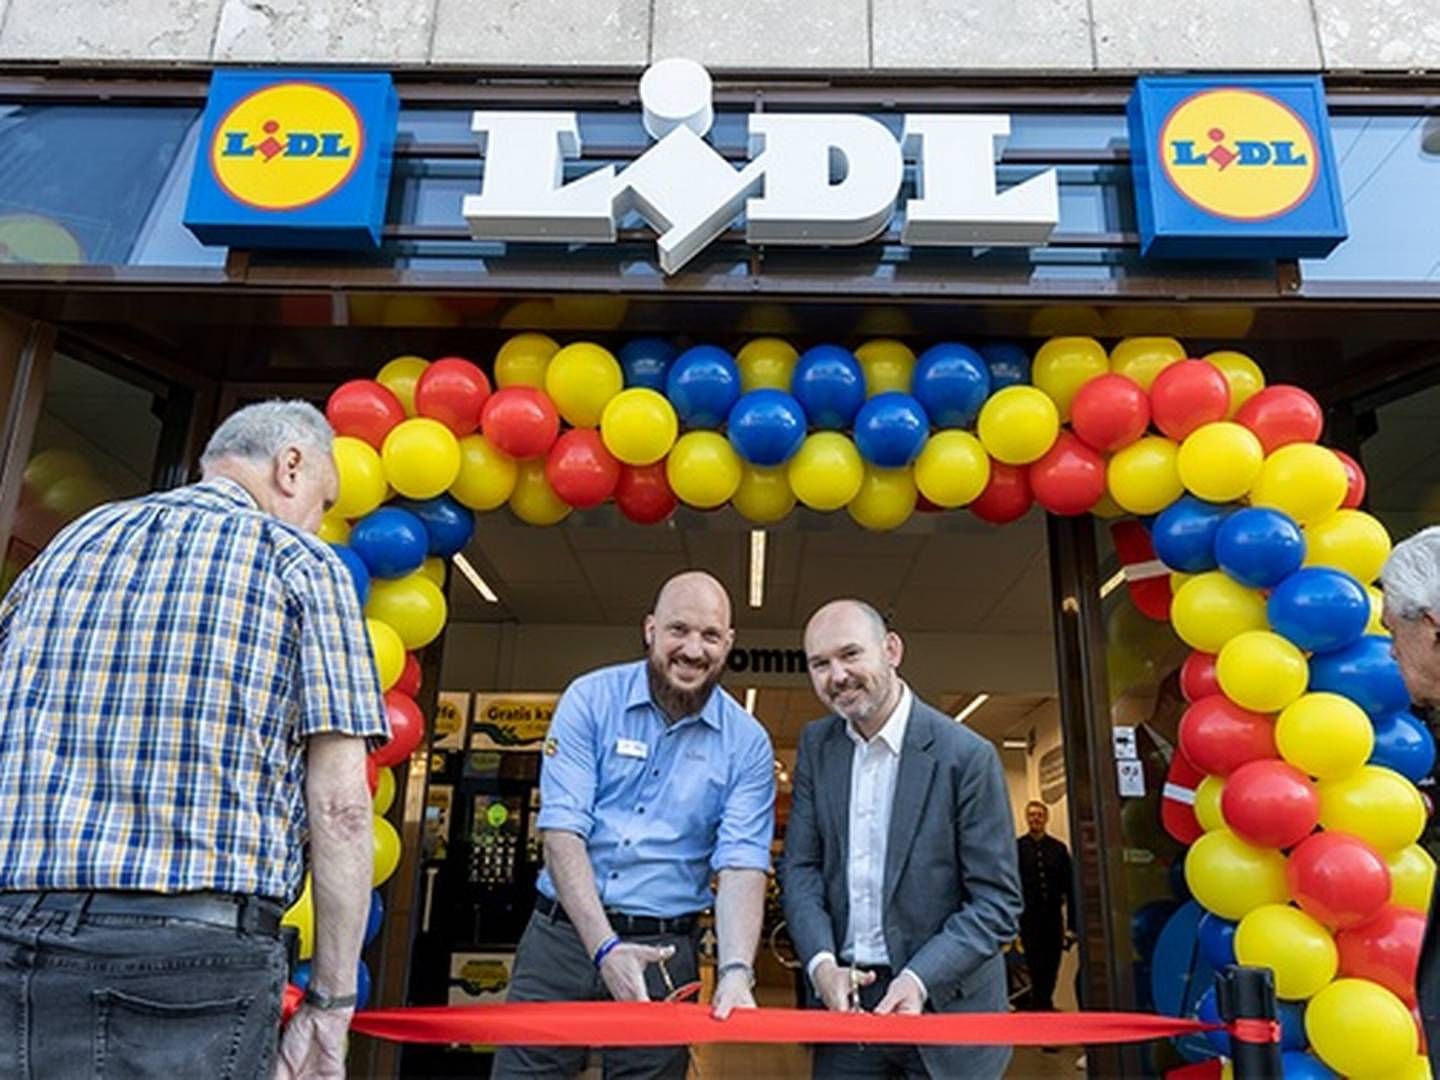 Butikschef Seier Kragh Hansen (tv) skal stå i spidsen for Lidls butik nummer 143 | Photo: PR/Lidl